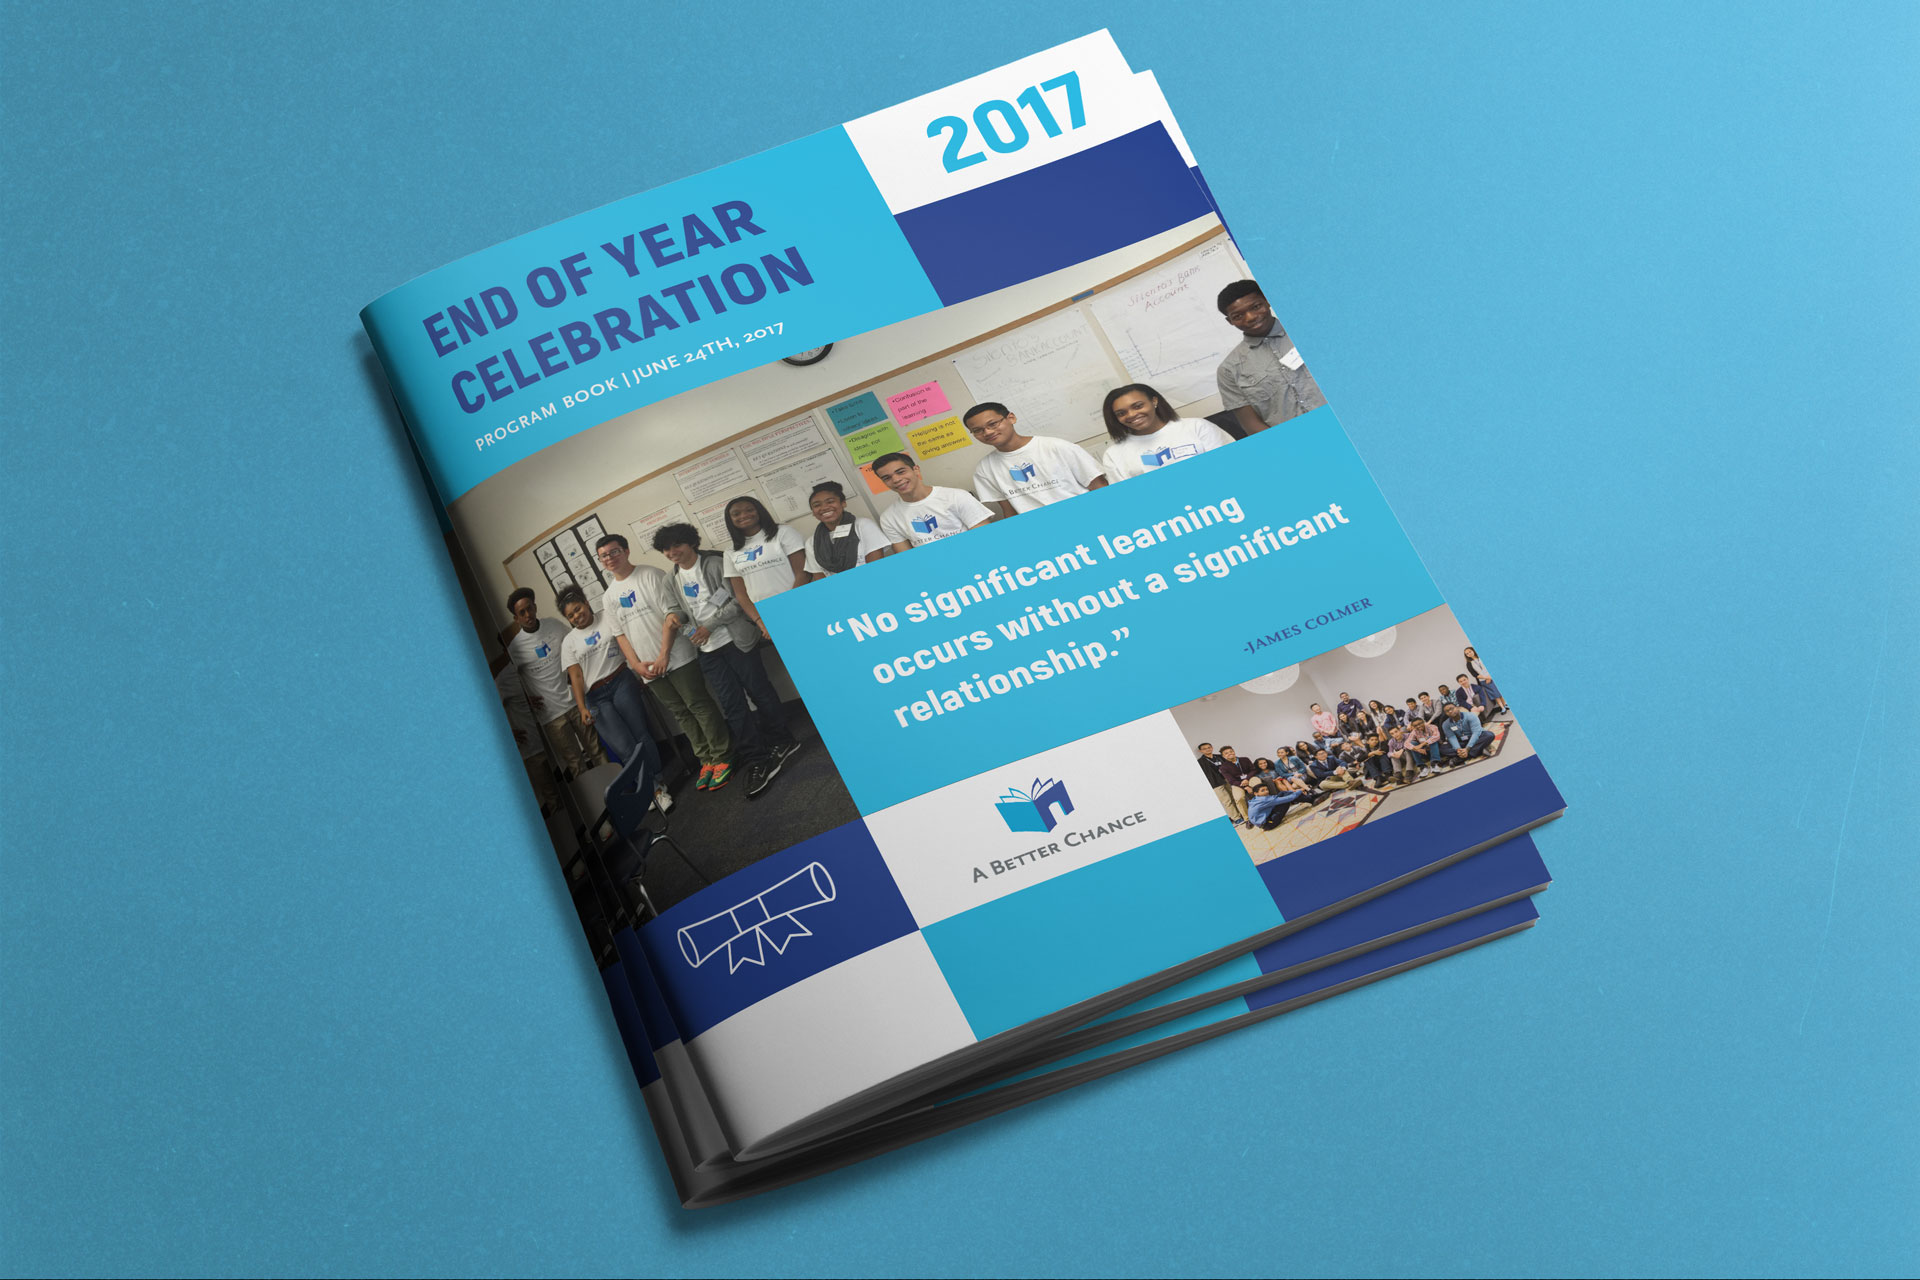 A Better Chance's 2017 EOYC Program Book